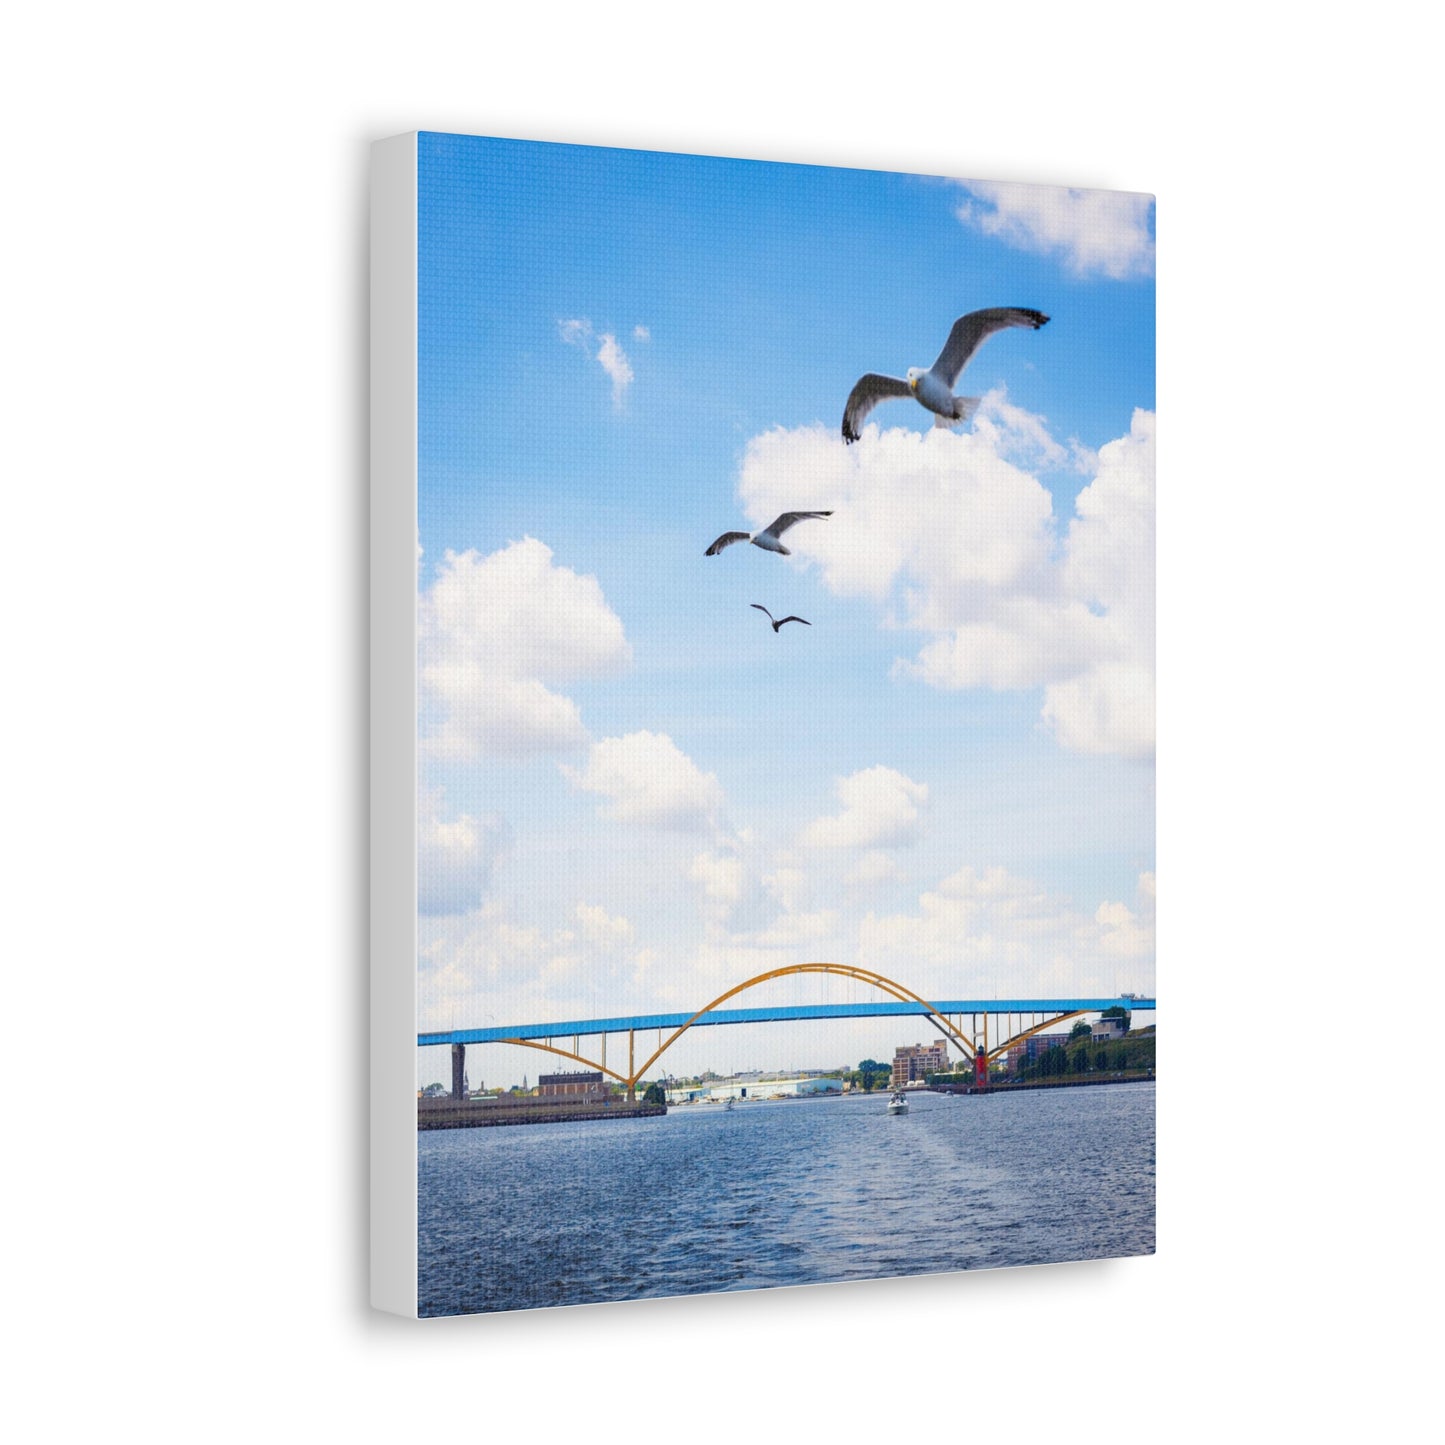 Puente Hoan de Milwaukee Wisconsin con 3 gaviotas, fotografía lienzo envoltura arte de pared